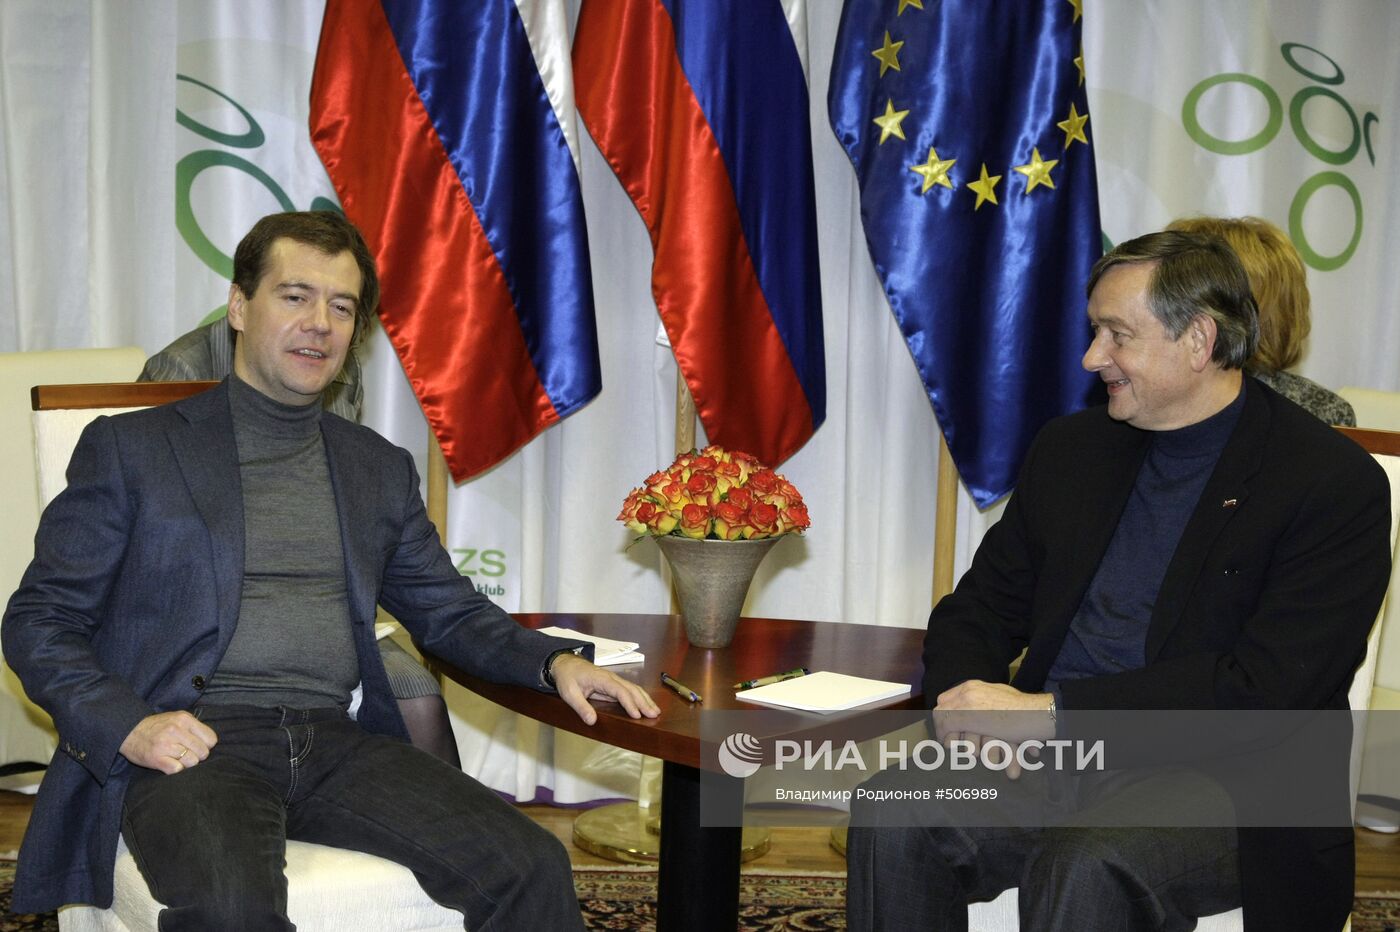 Д. Медведев посетил матч Словения-Россия